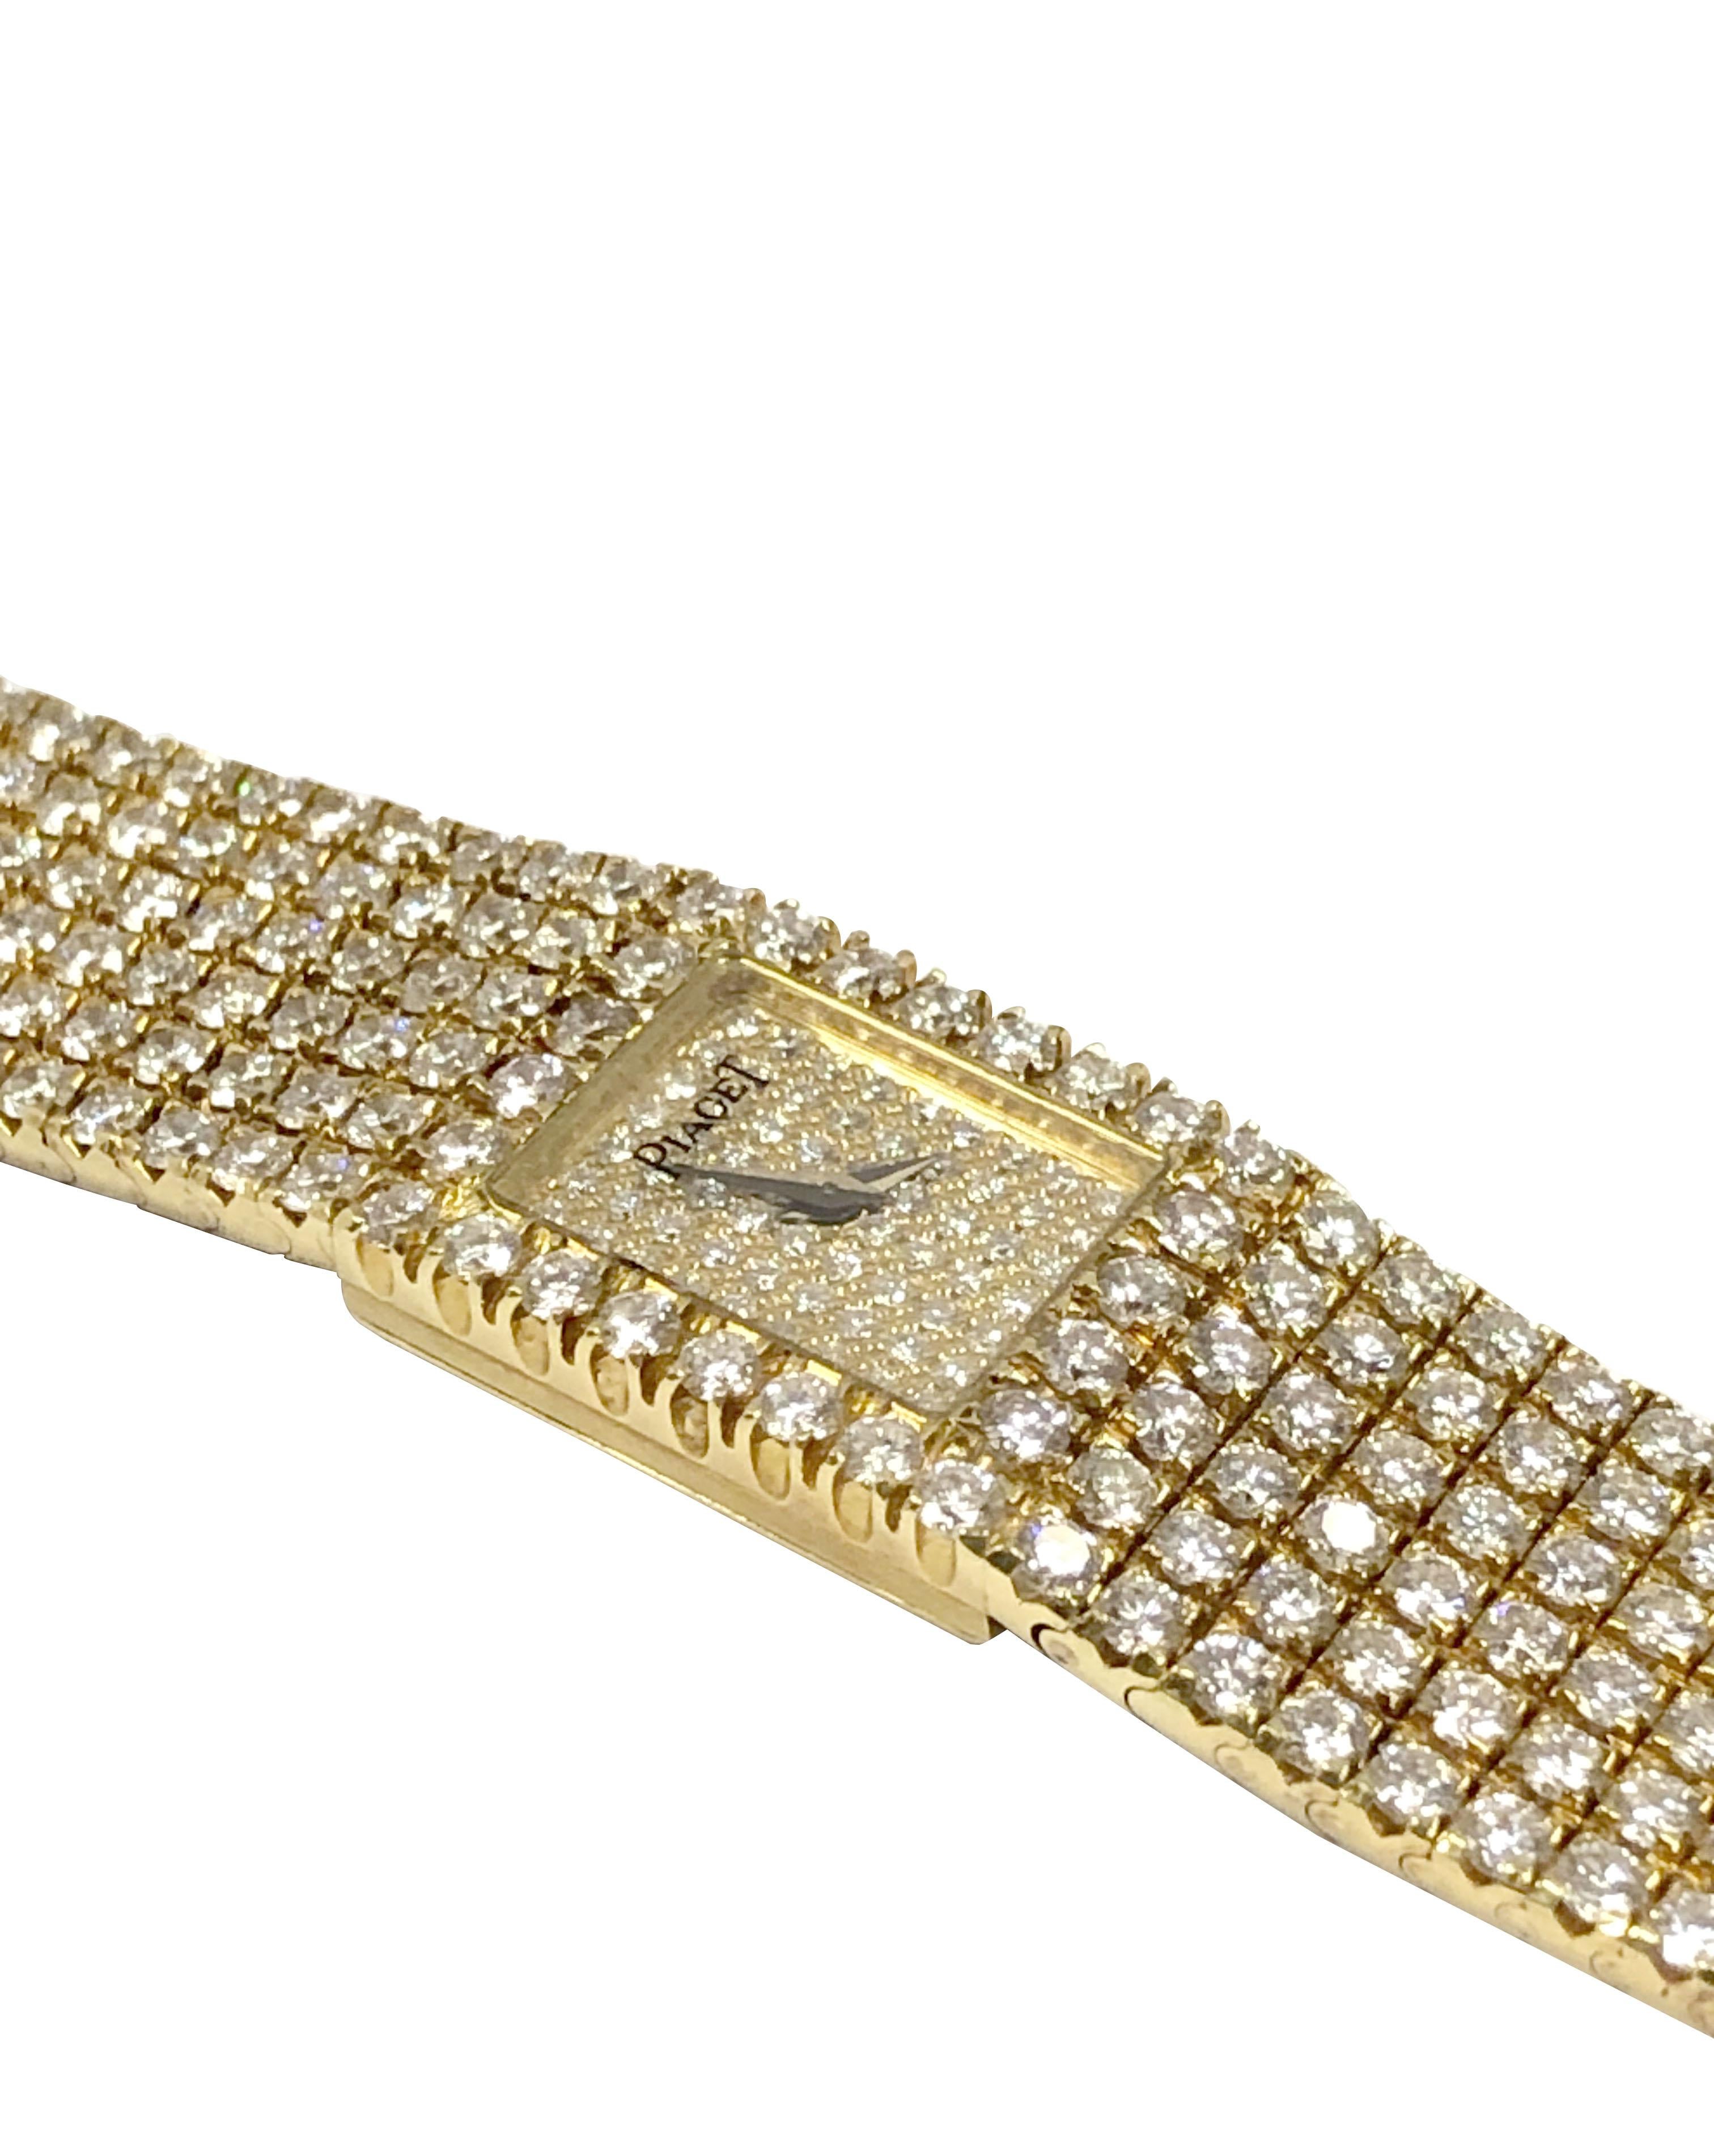 Circa 1990 Piaget Polo Reference 15201 Ladies 18k Yellow Gold Wrist Watch,  serti d'environ 20 carats de diamants blancs ronds de taille brillant dans un bracelet souple et doux, mesurant 7 1/2 pouces de long et un peu plus de 1/2 pouce de large.